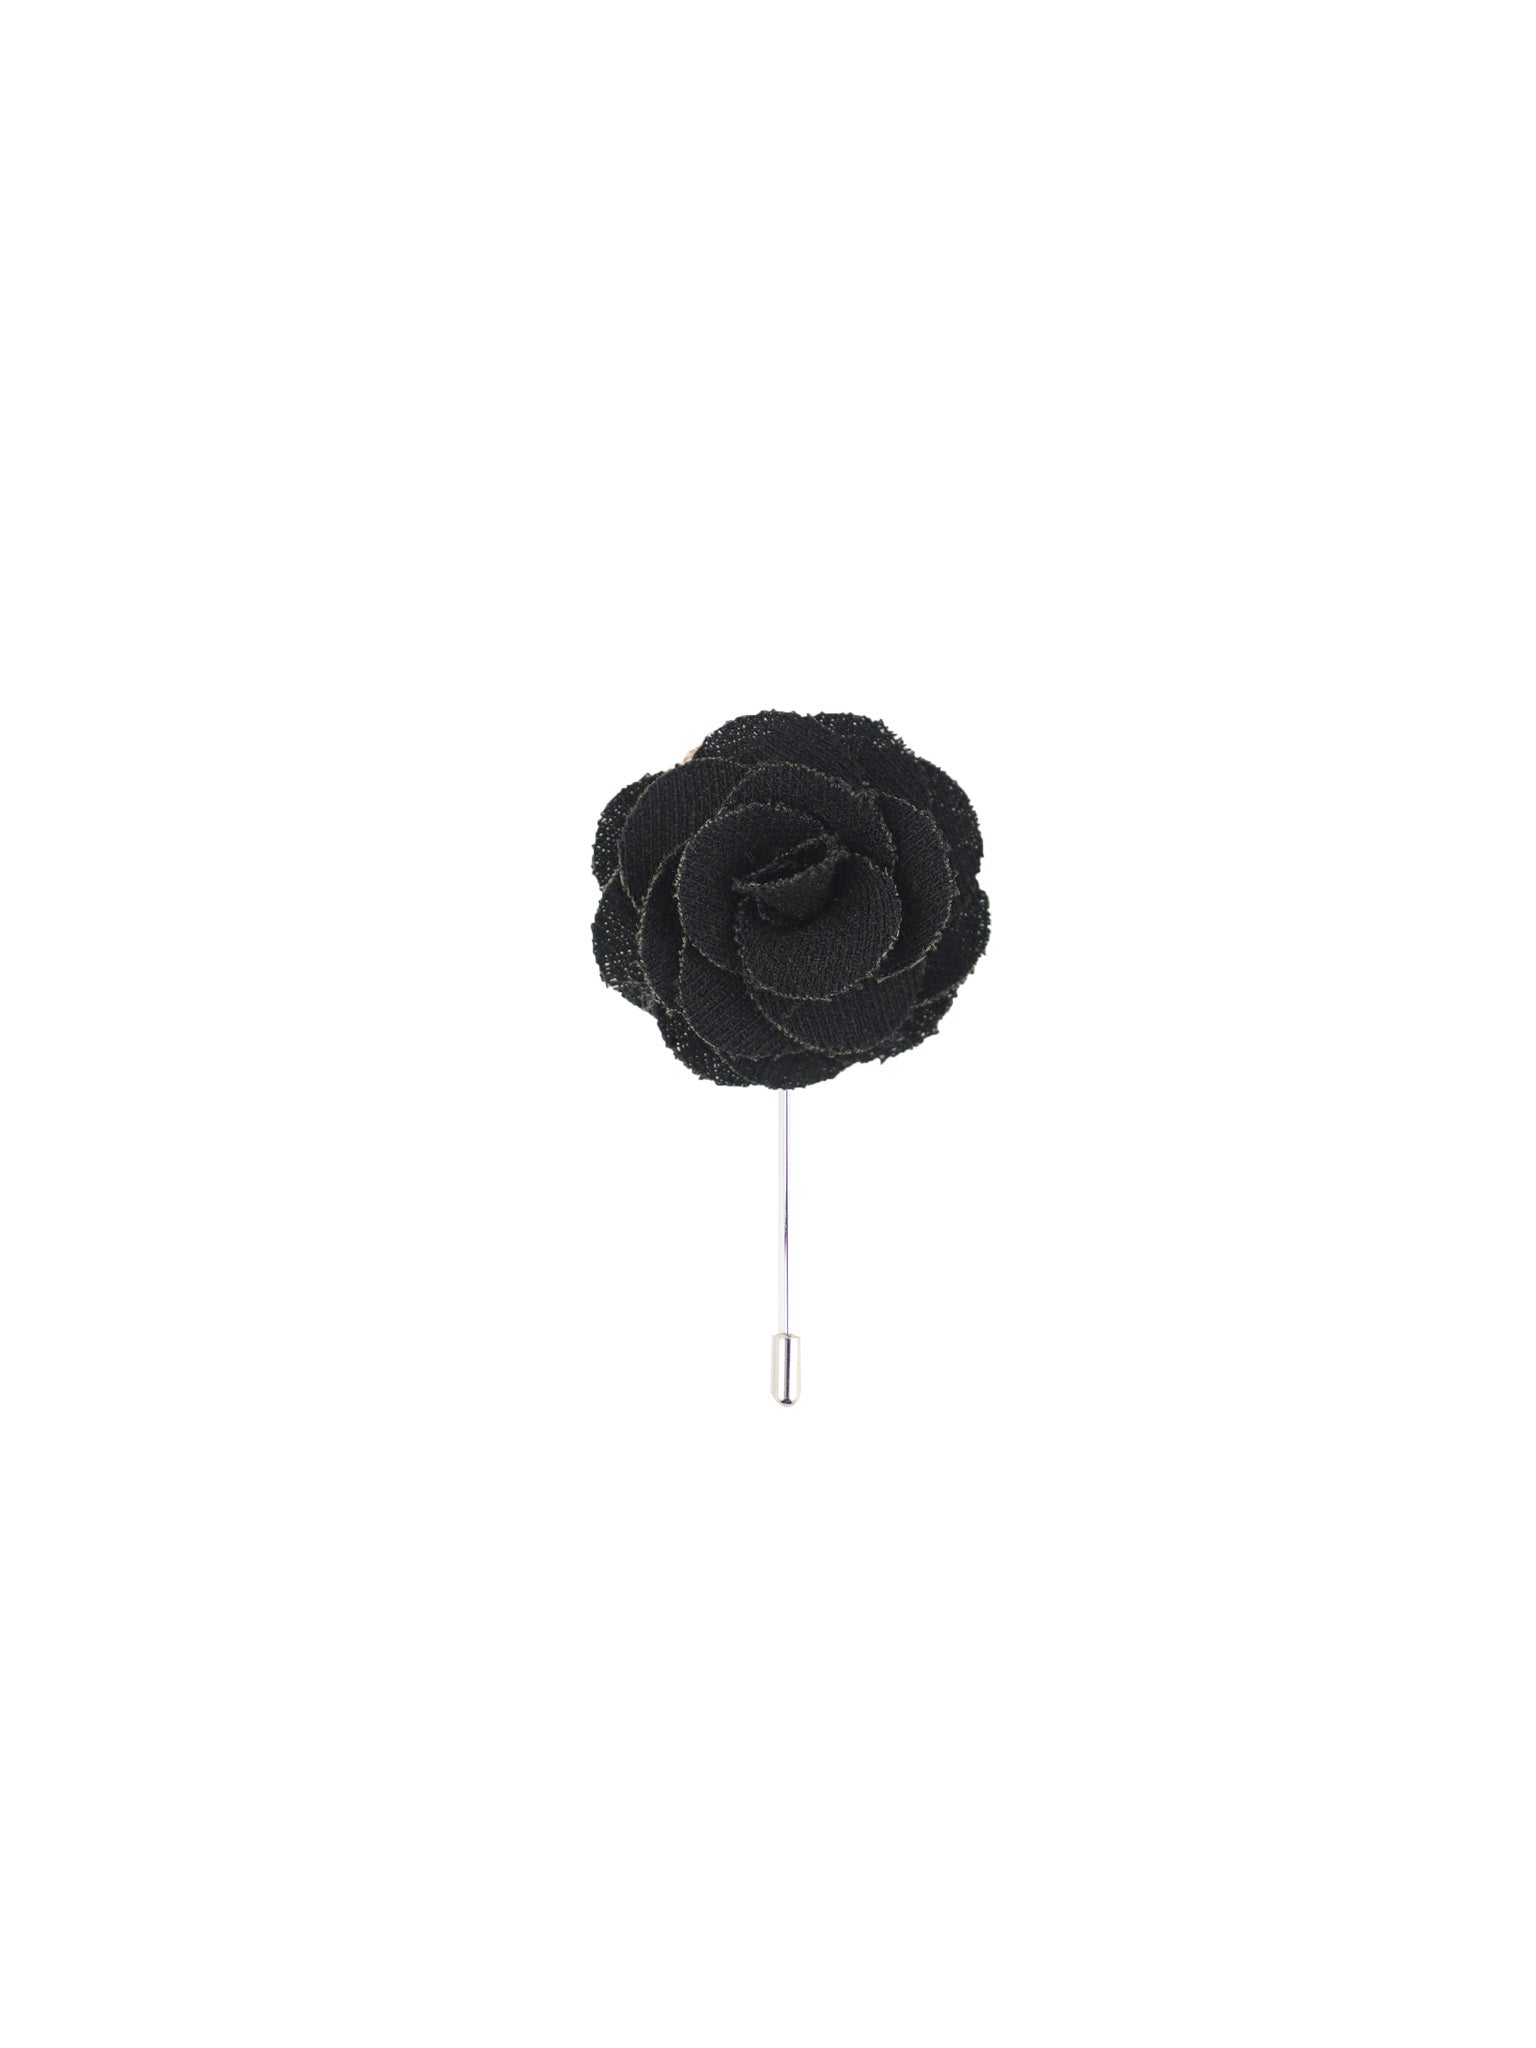 Burlap Black Lapel Pin from DIBI